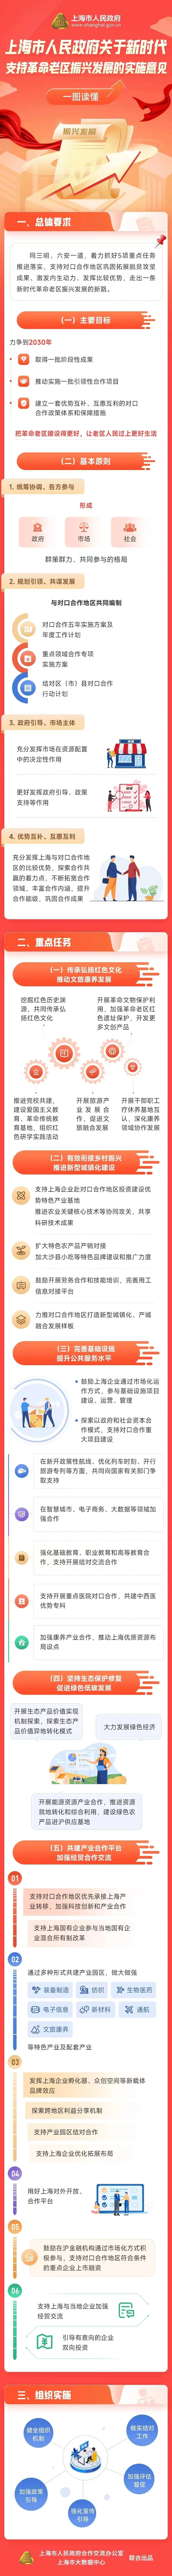 上海市人民政府关于新时代支持革命老区振兴发展的实施意见（图文解说）.jpg